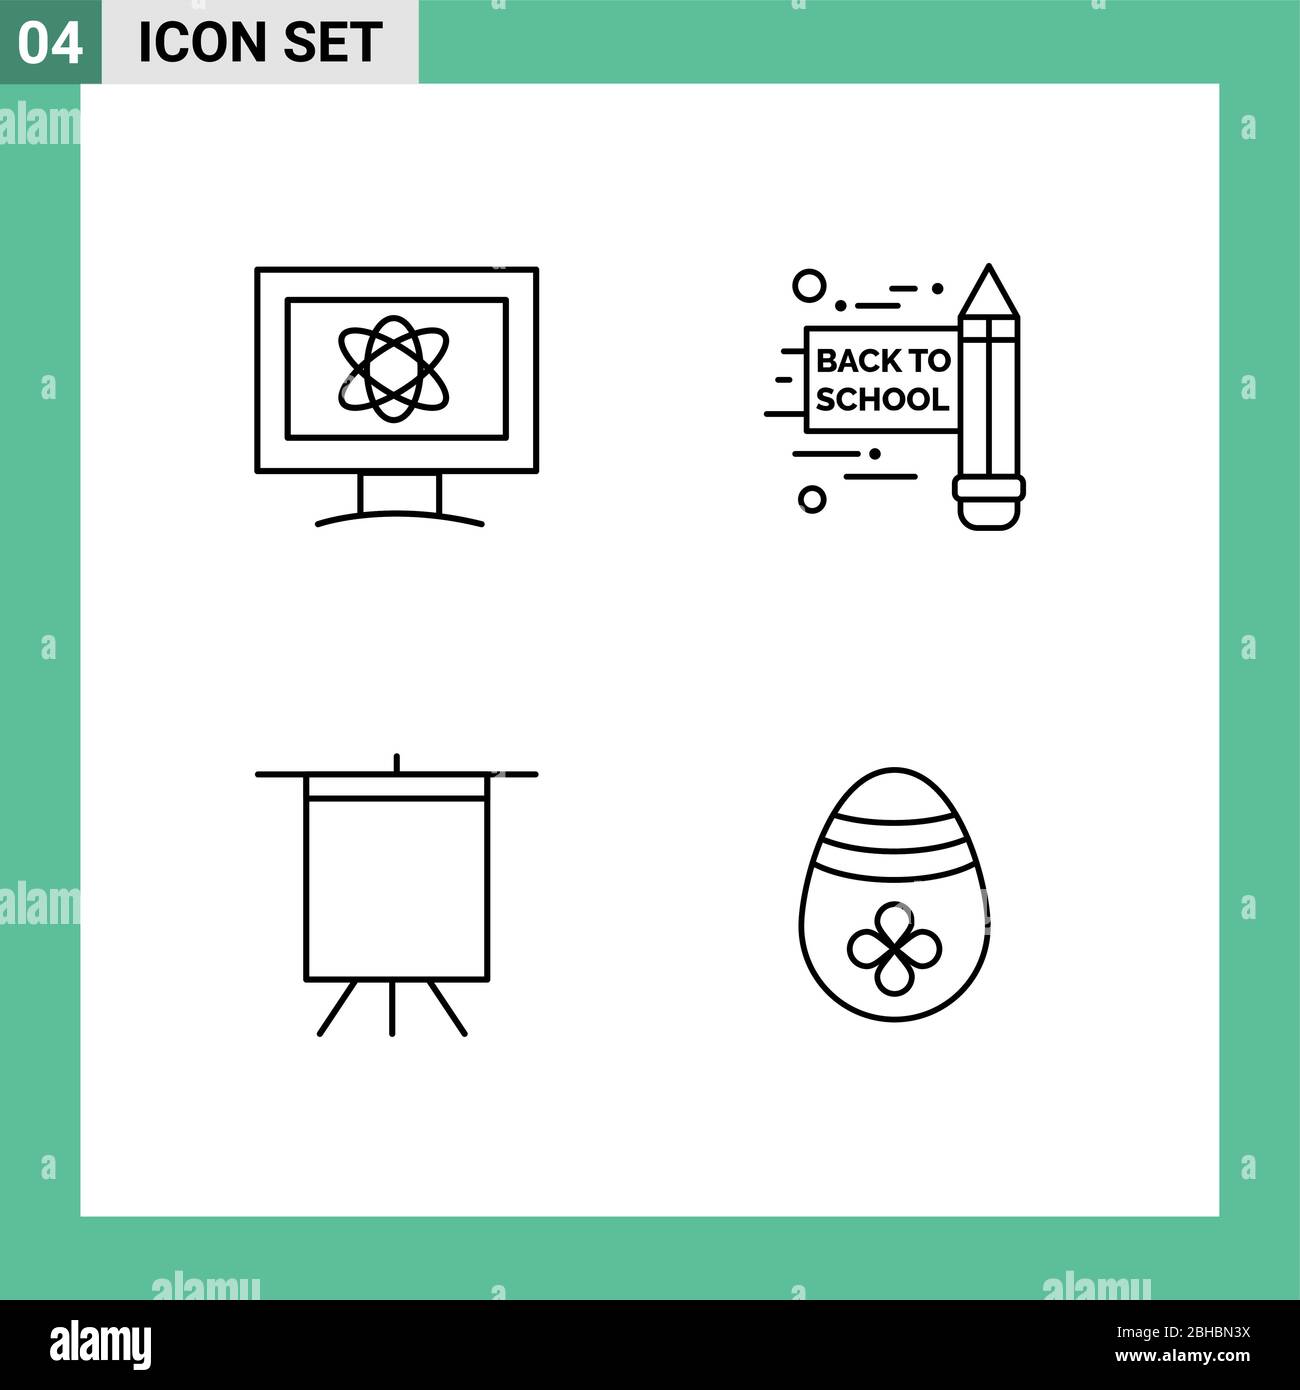 4 concetto di linea per i Web site Mobile e Apps Atom, decorazione, spazio, arte, uovo di pasqua elementi di disegno vettoriale editabili Illustrazione Vettoriale